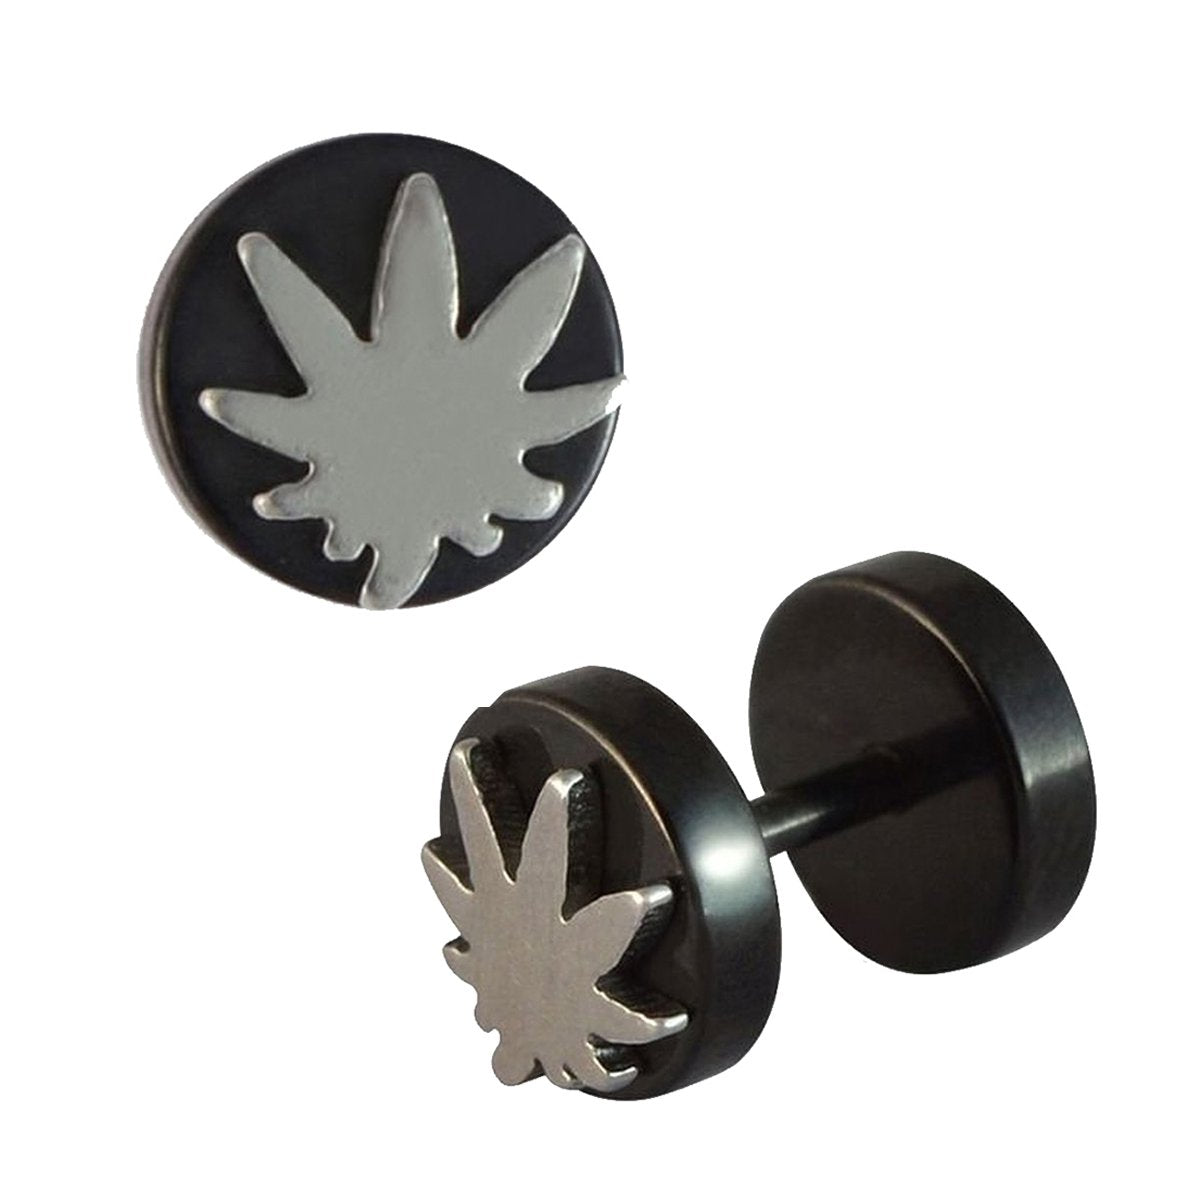 Bob Marley Maple Leaf Black Silver Stainless Steel Pair Stud Earring